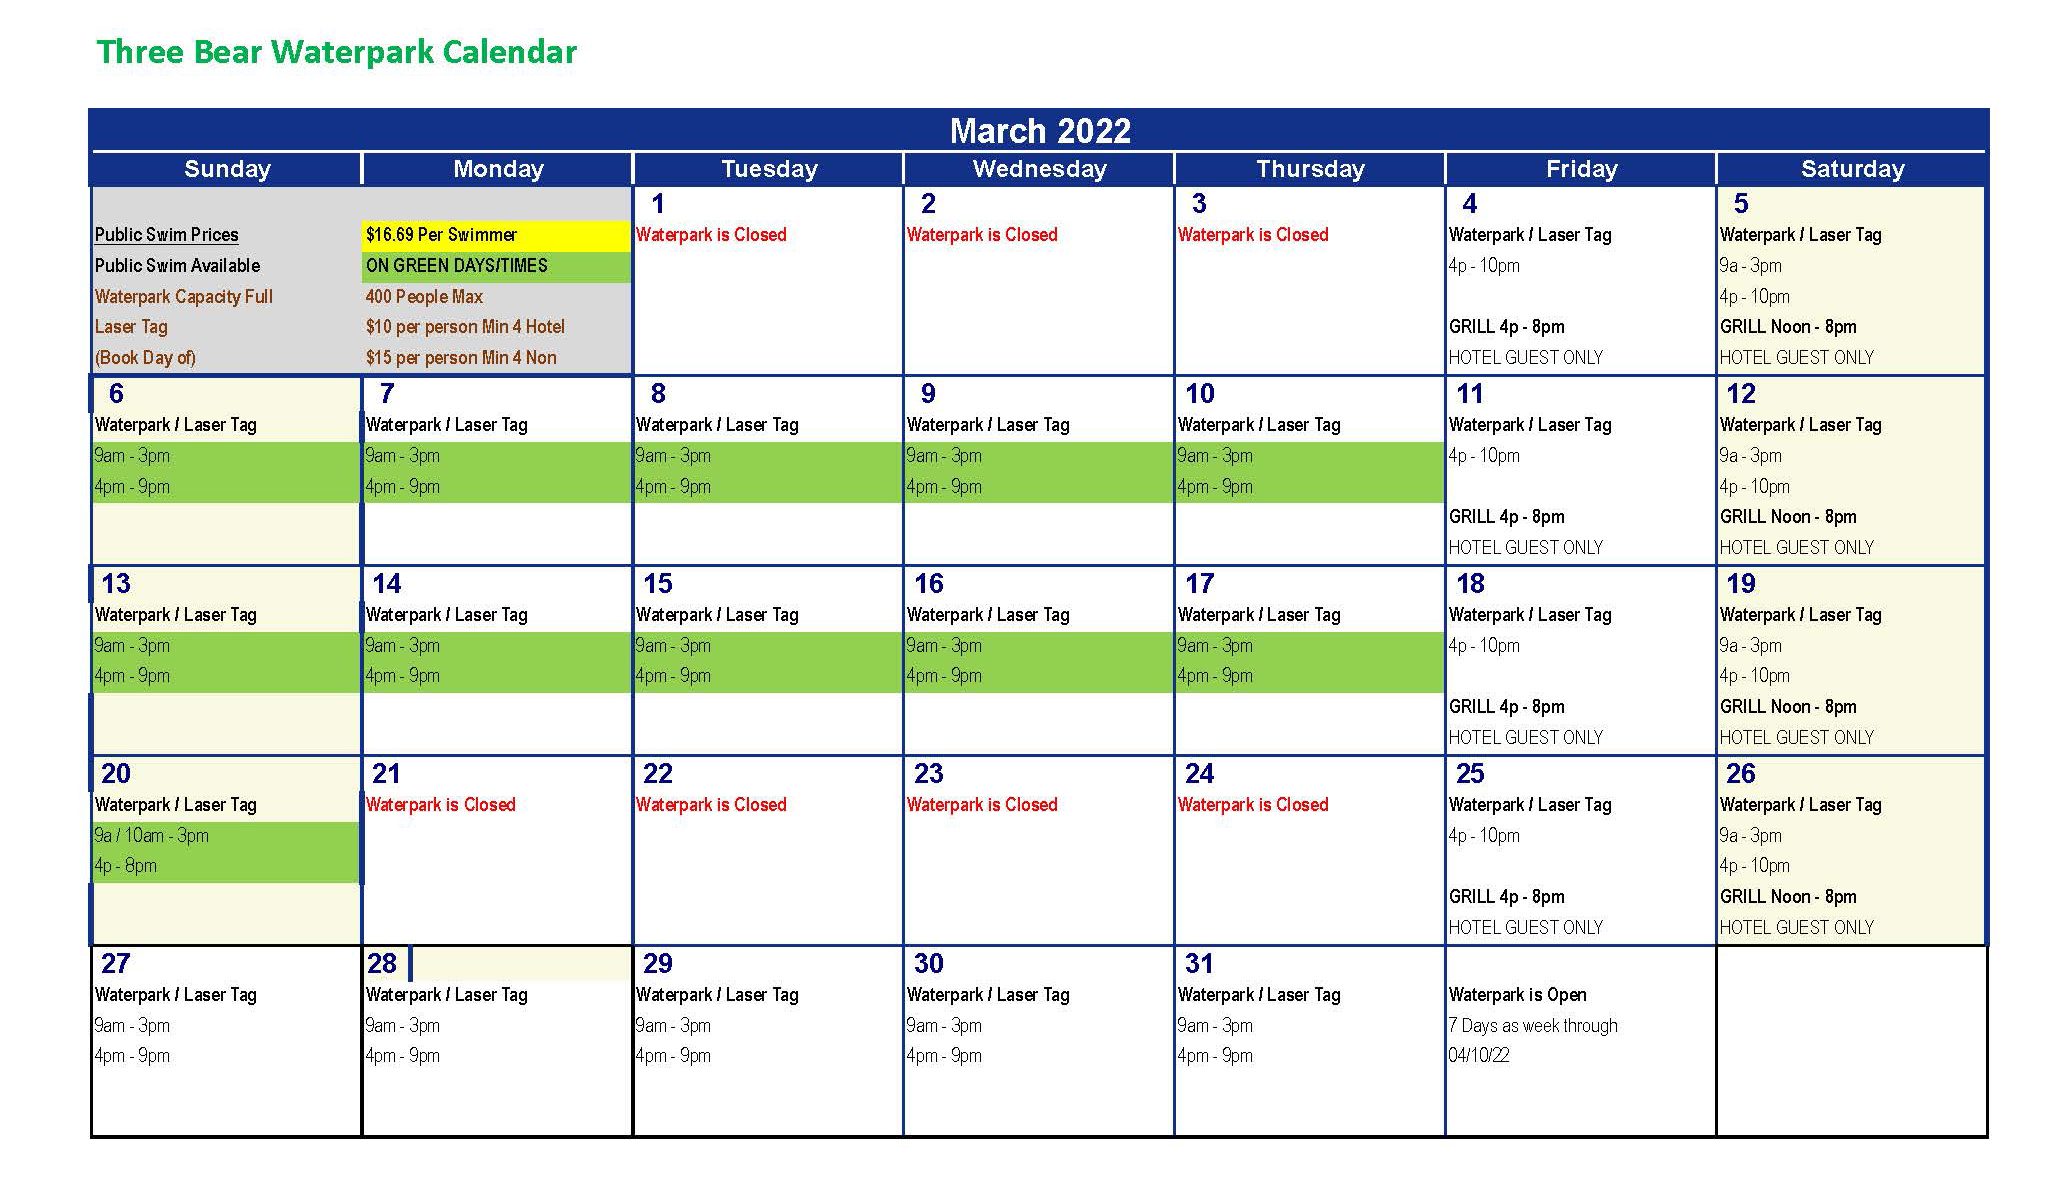 March 2022 Calendar